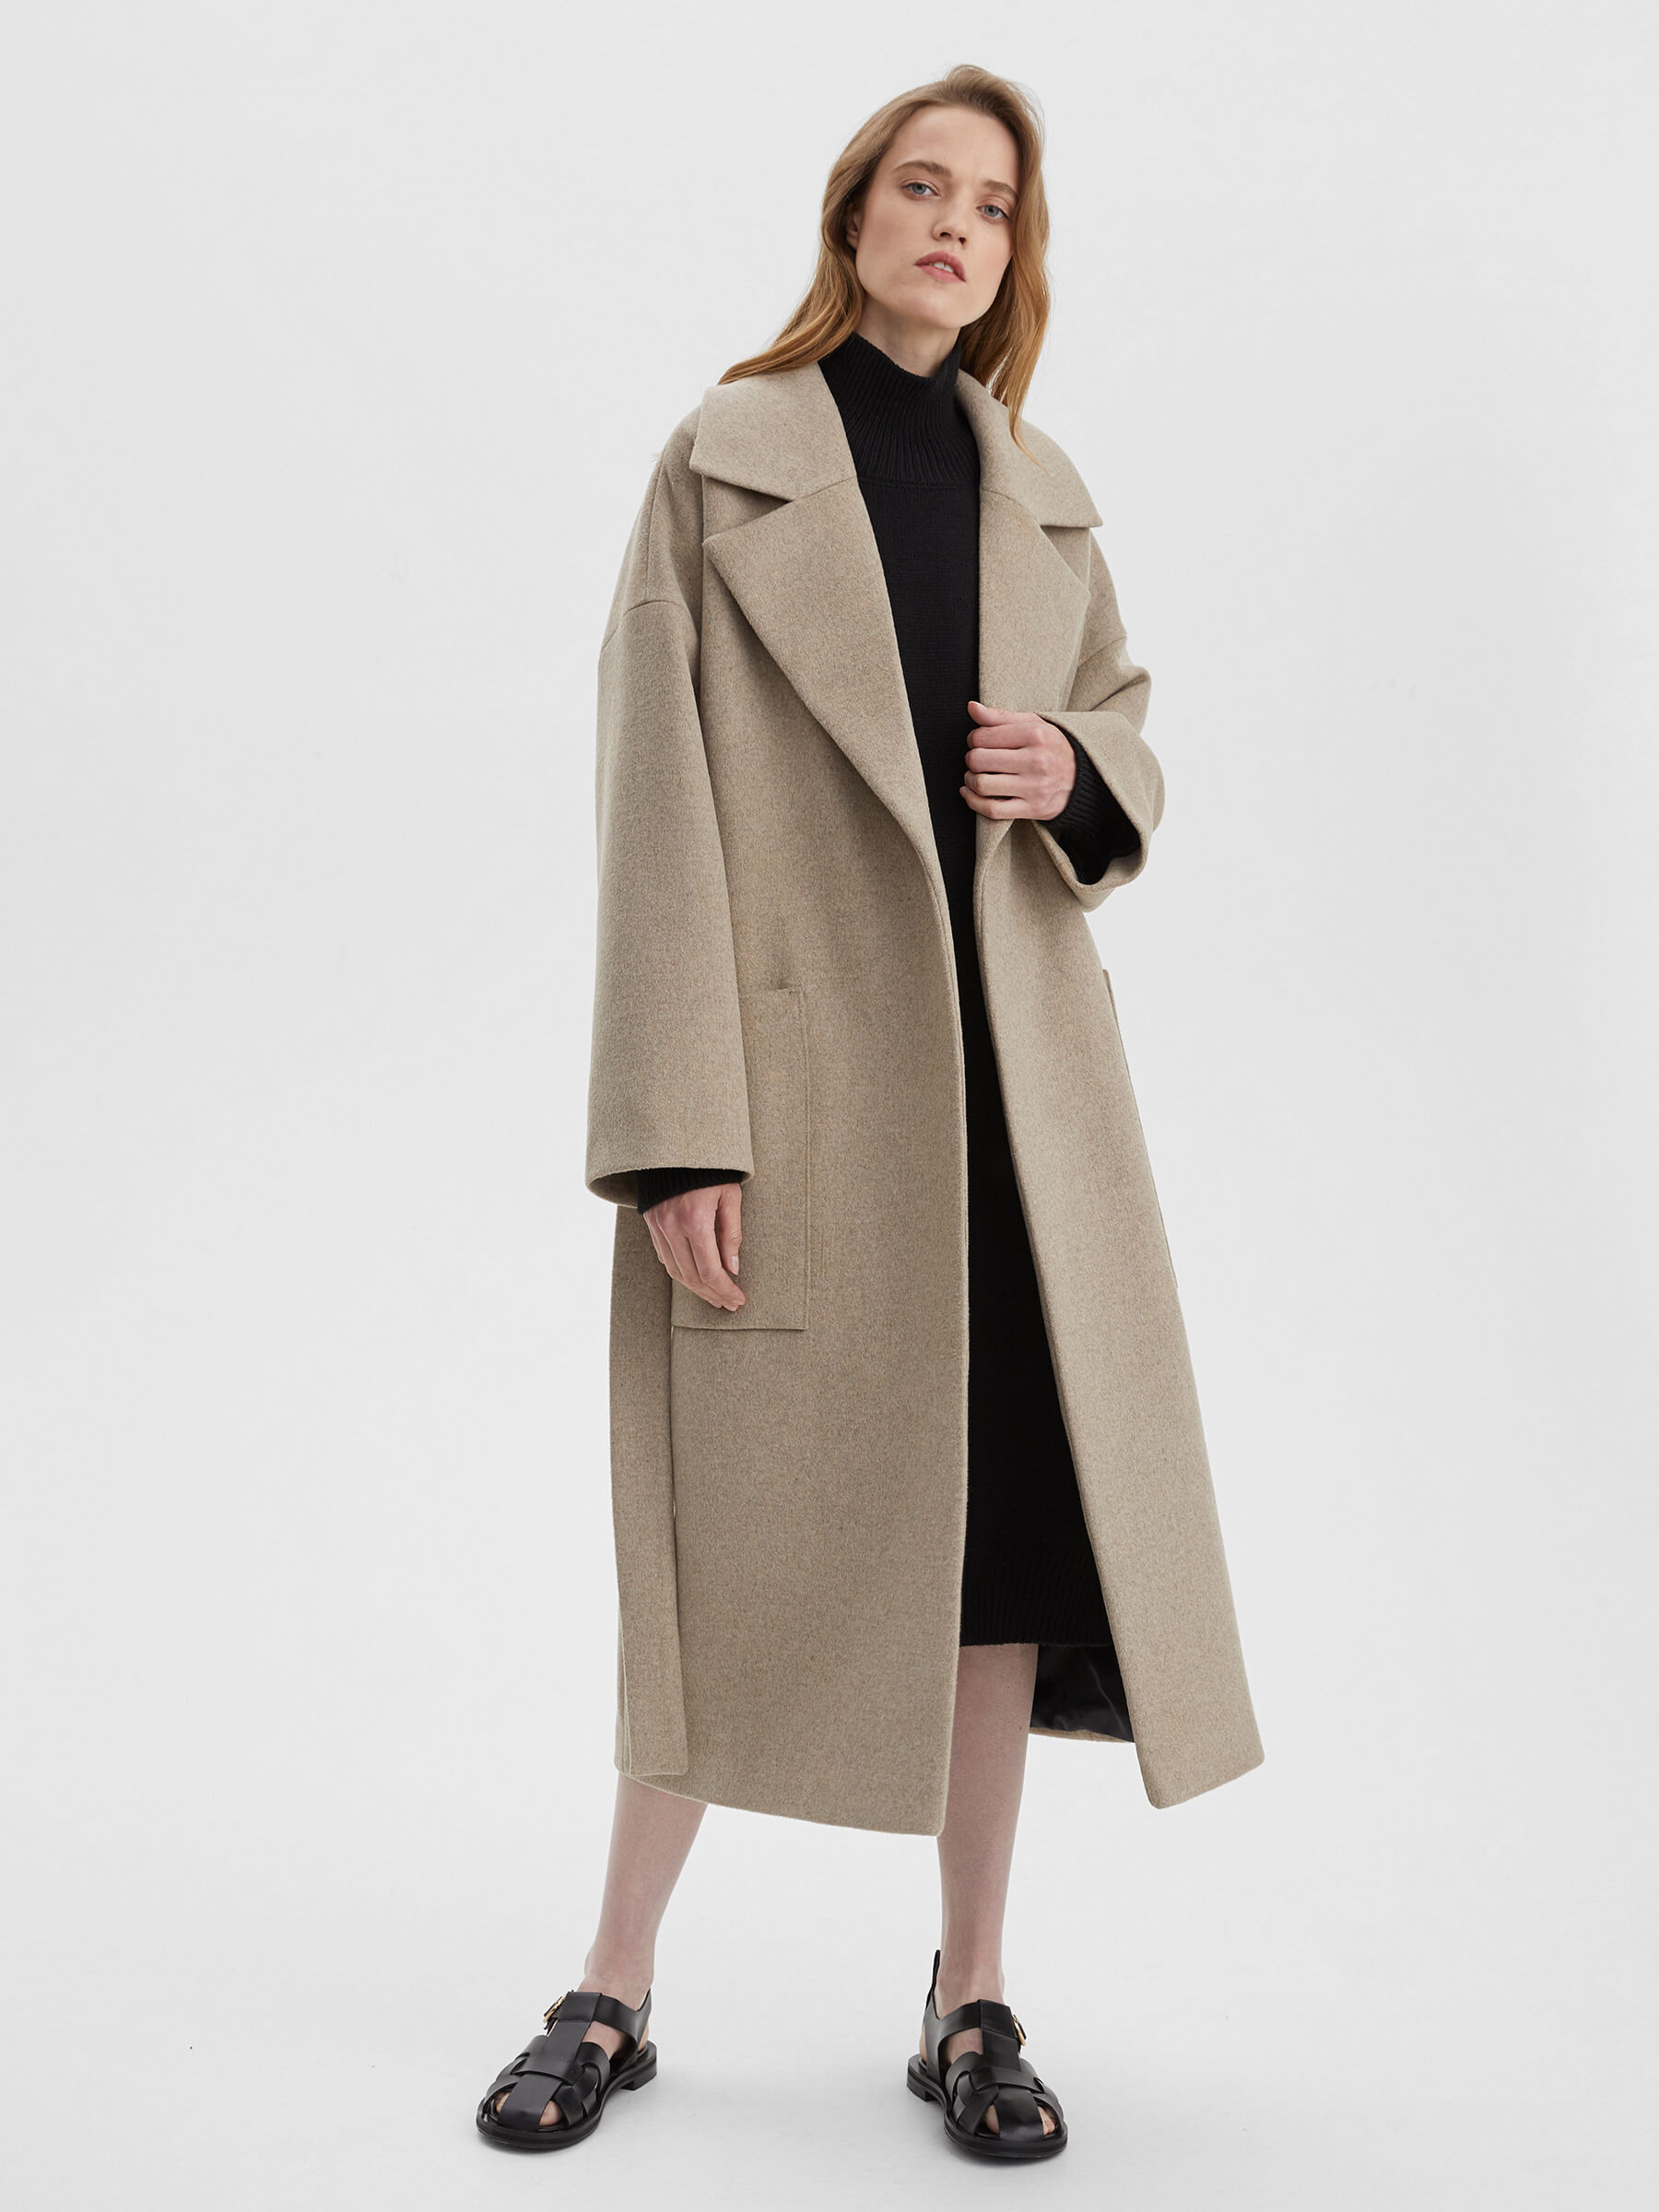 пальто женское длинное с объемными карманами и поясом цвет – молочный Пальто женское длинное с объемными карманами и поясом, цвет – молочный